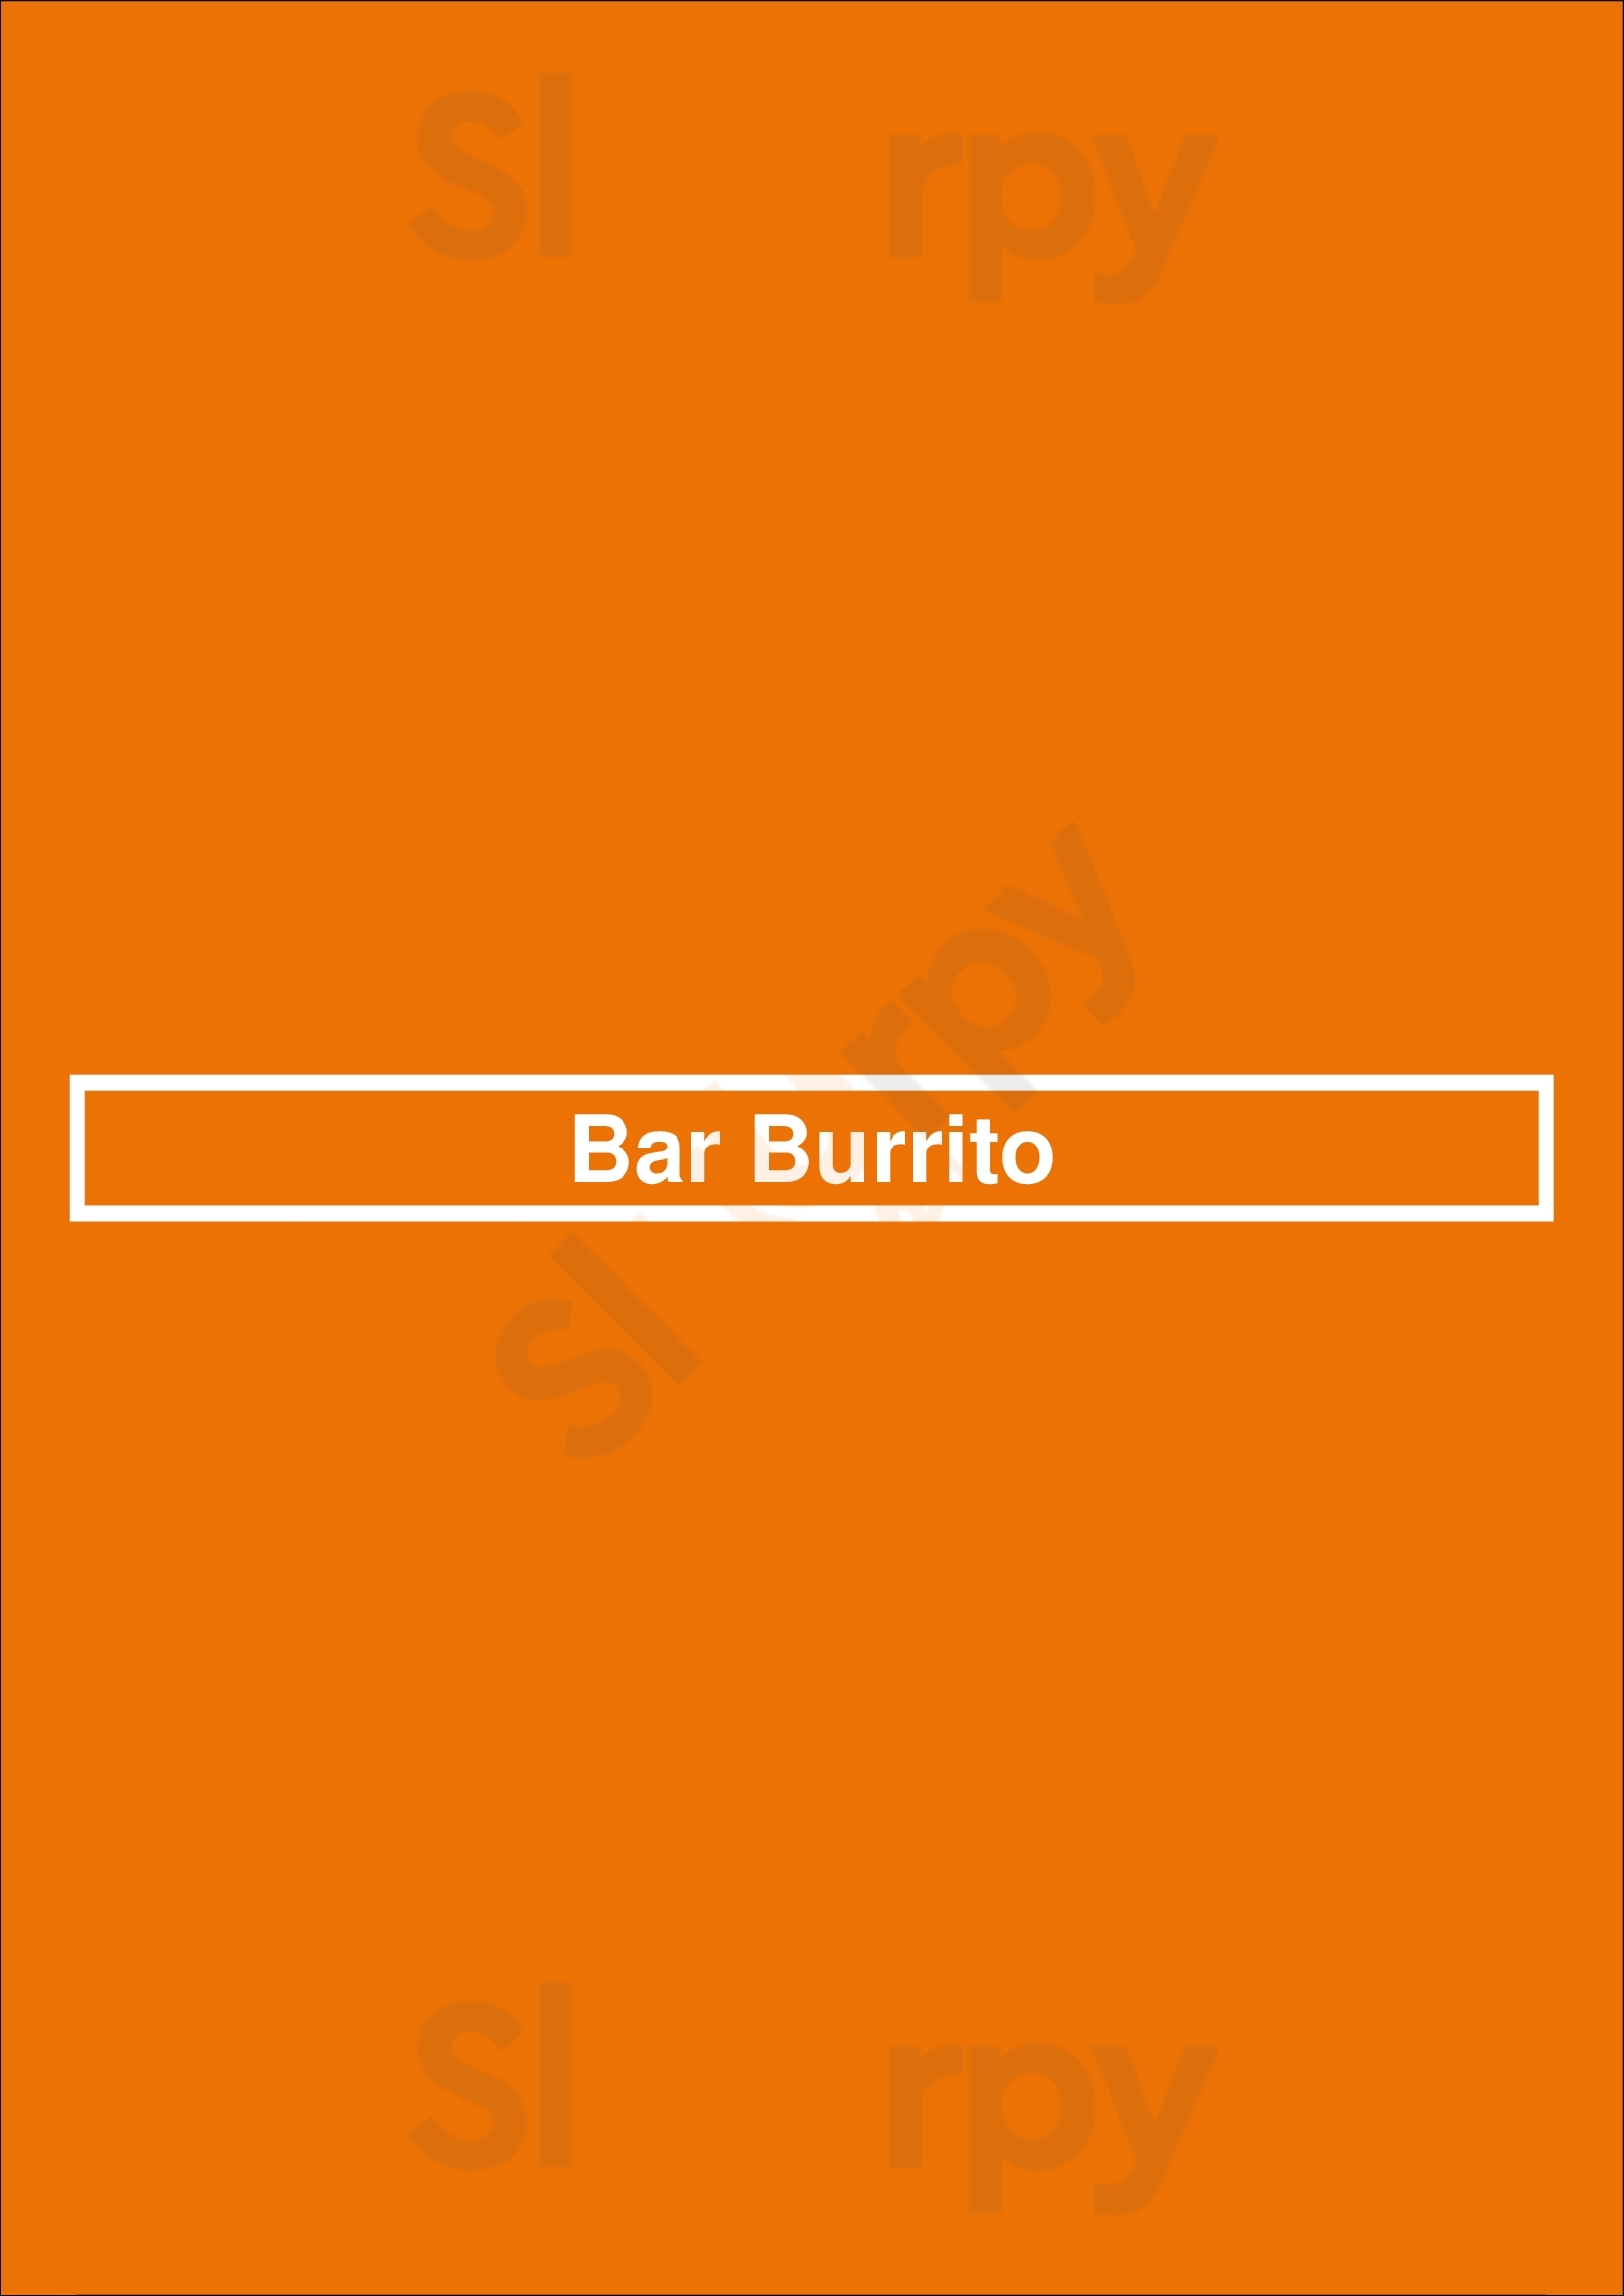 Bar Burrito Waterloo Menu - 1